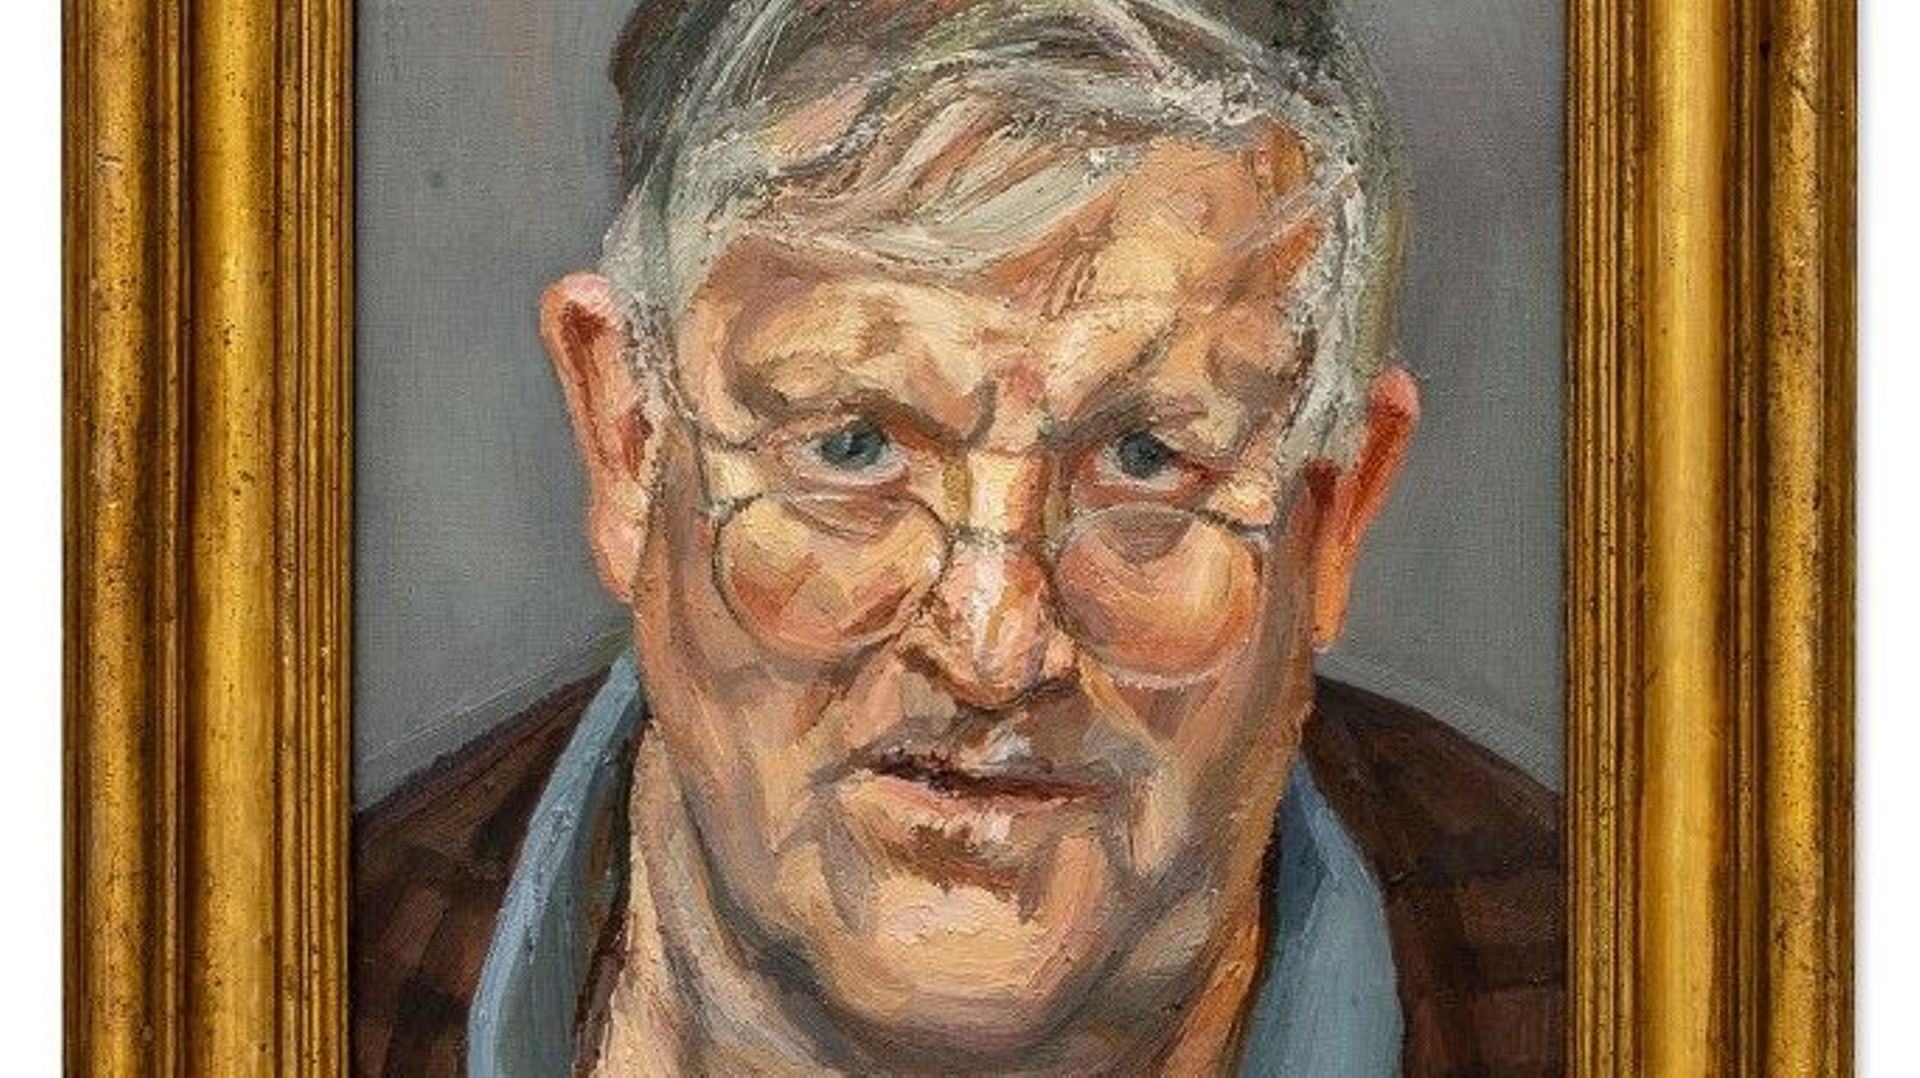 Un portrait de Lucian Freud représentant David Hockney fera son apparition sur le marché le 29 juin prochain.